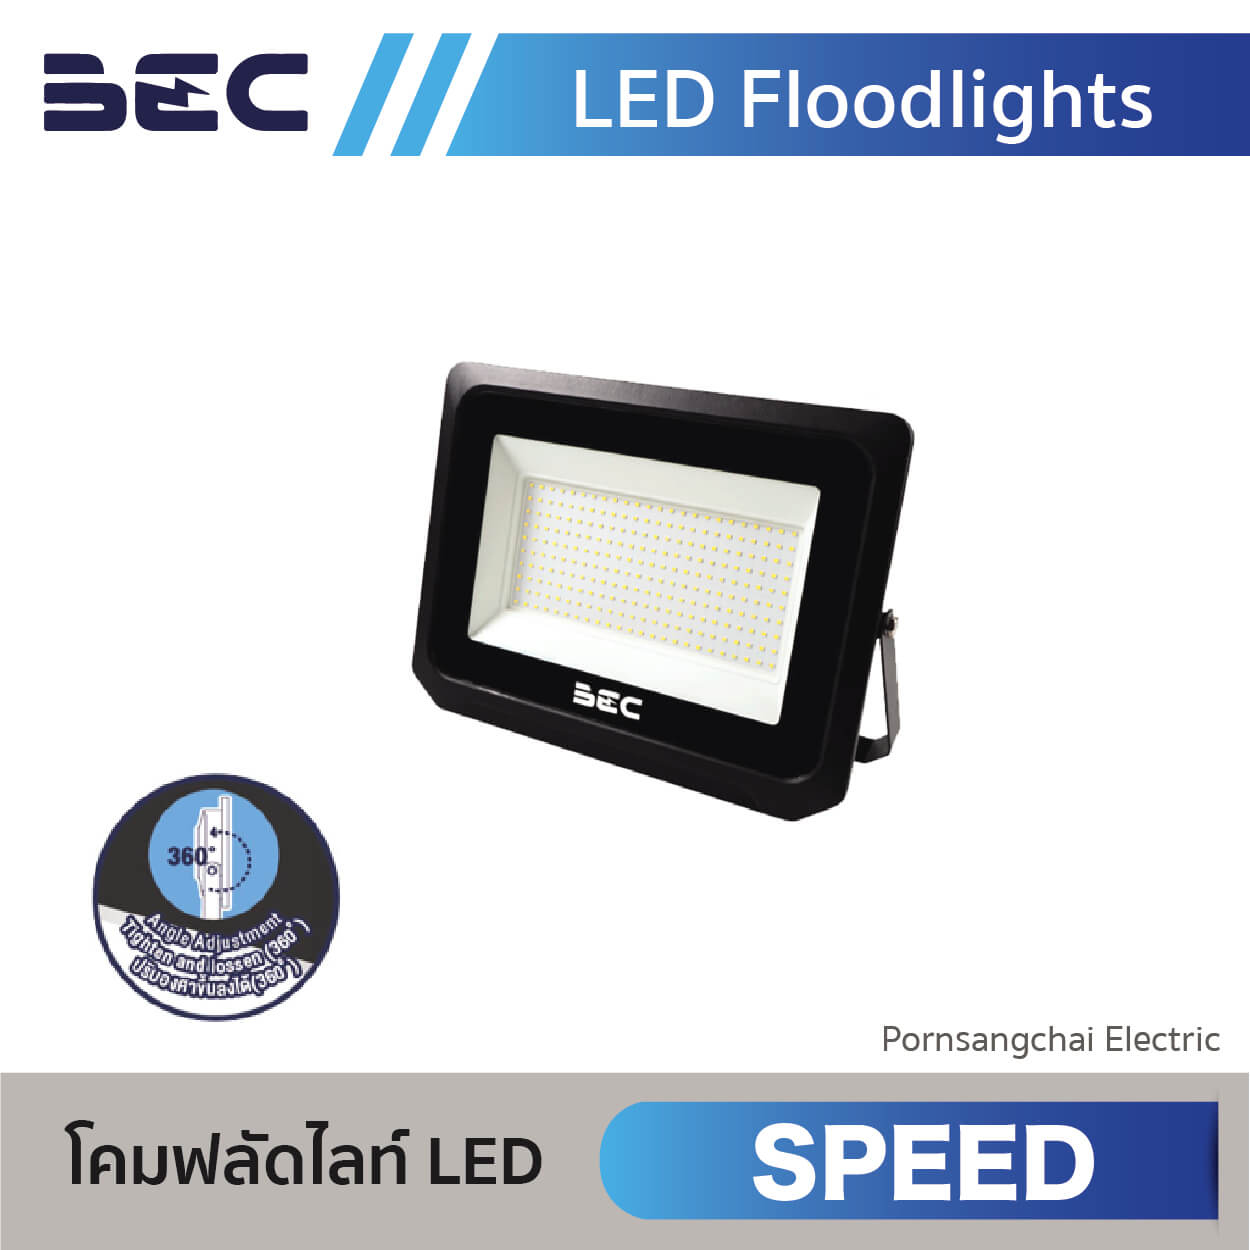 BEC LED Floodlights SPEED